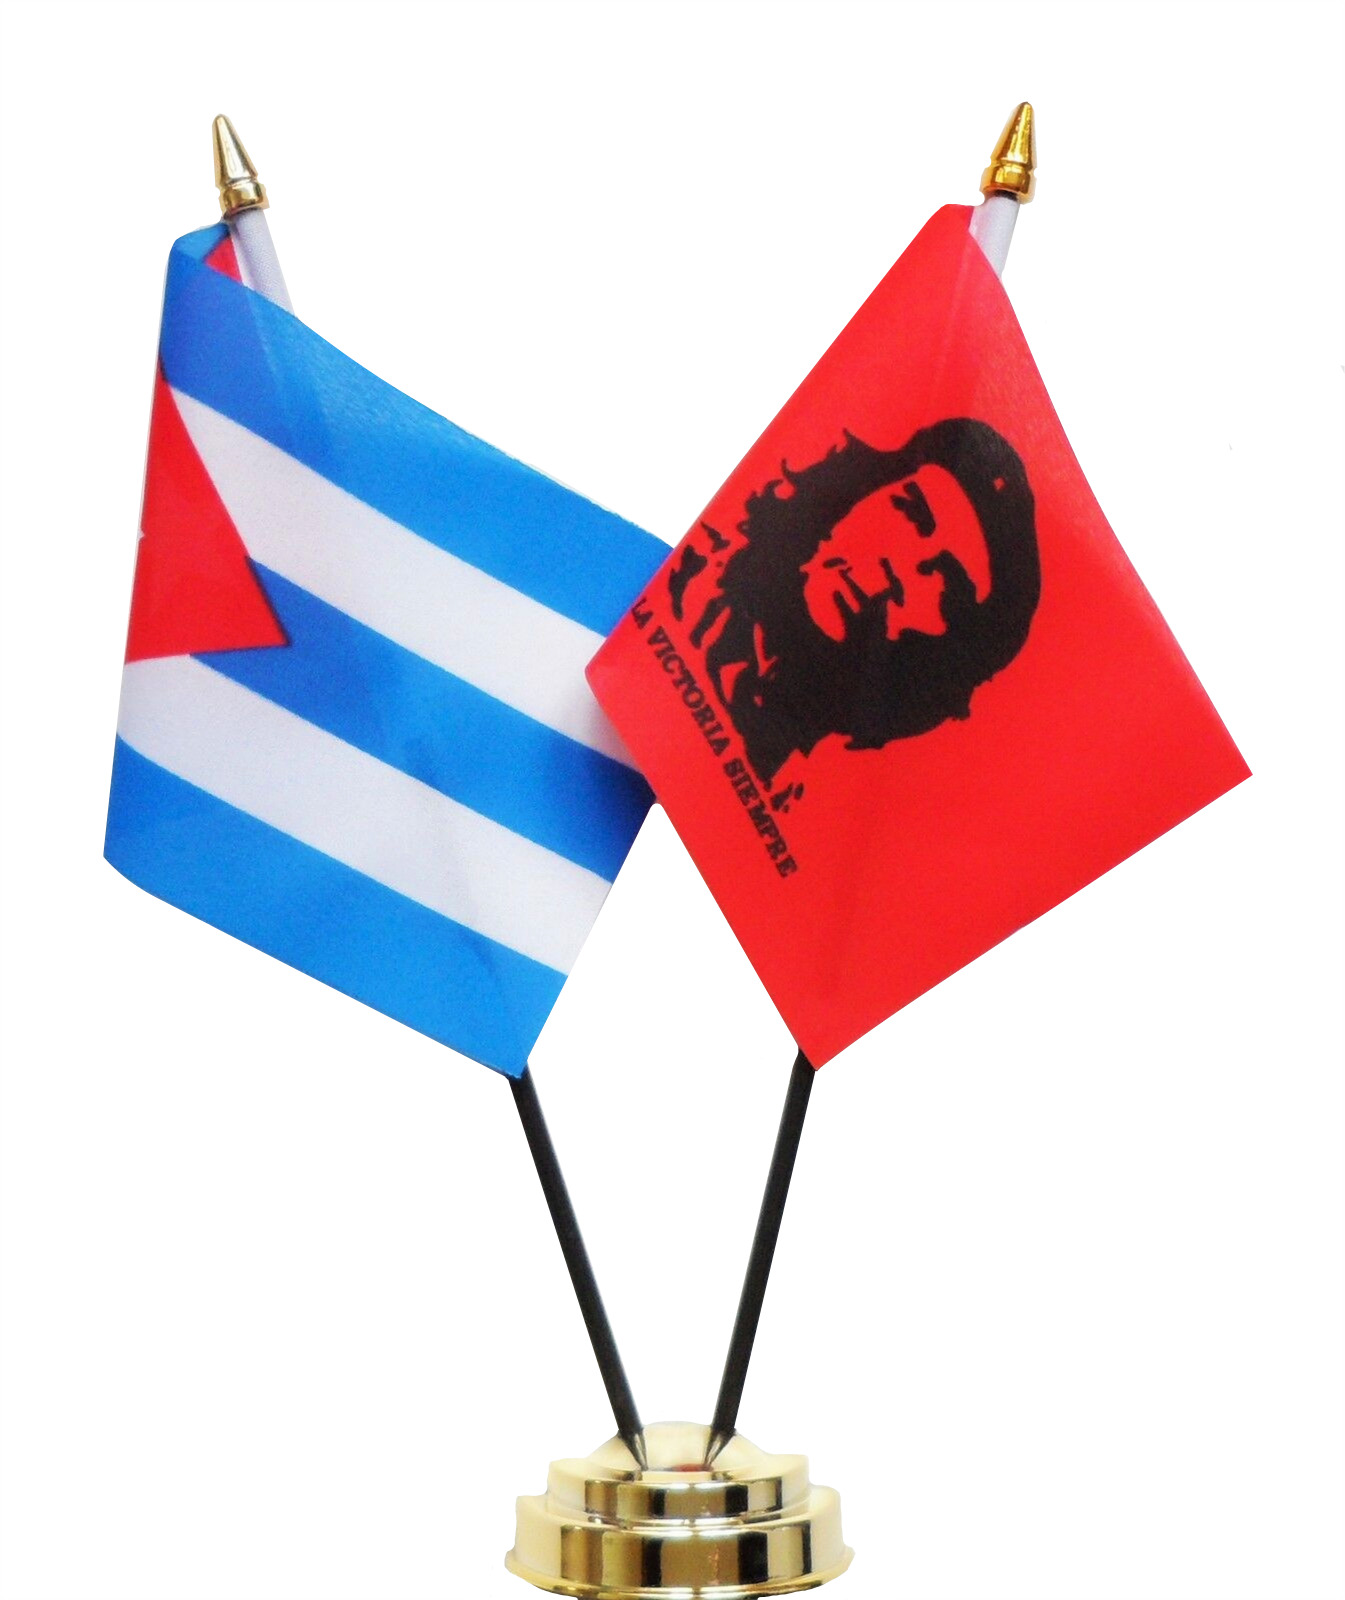 Cuba & Che Guevara Double Friendship Table Flag Set